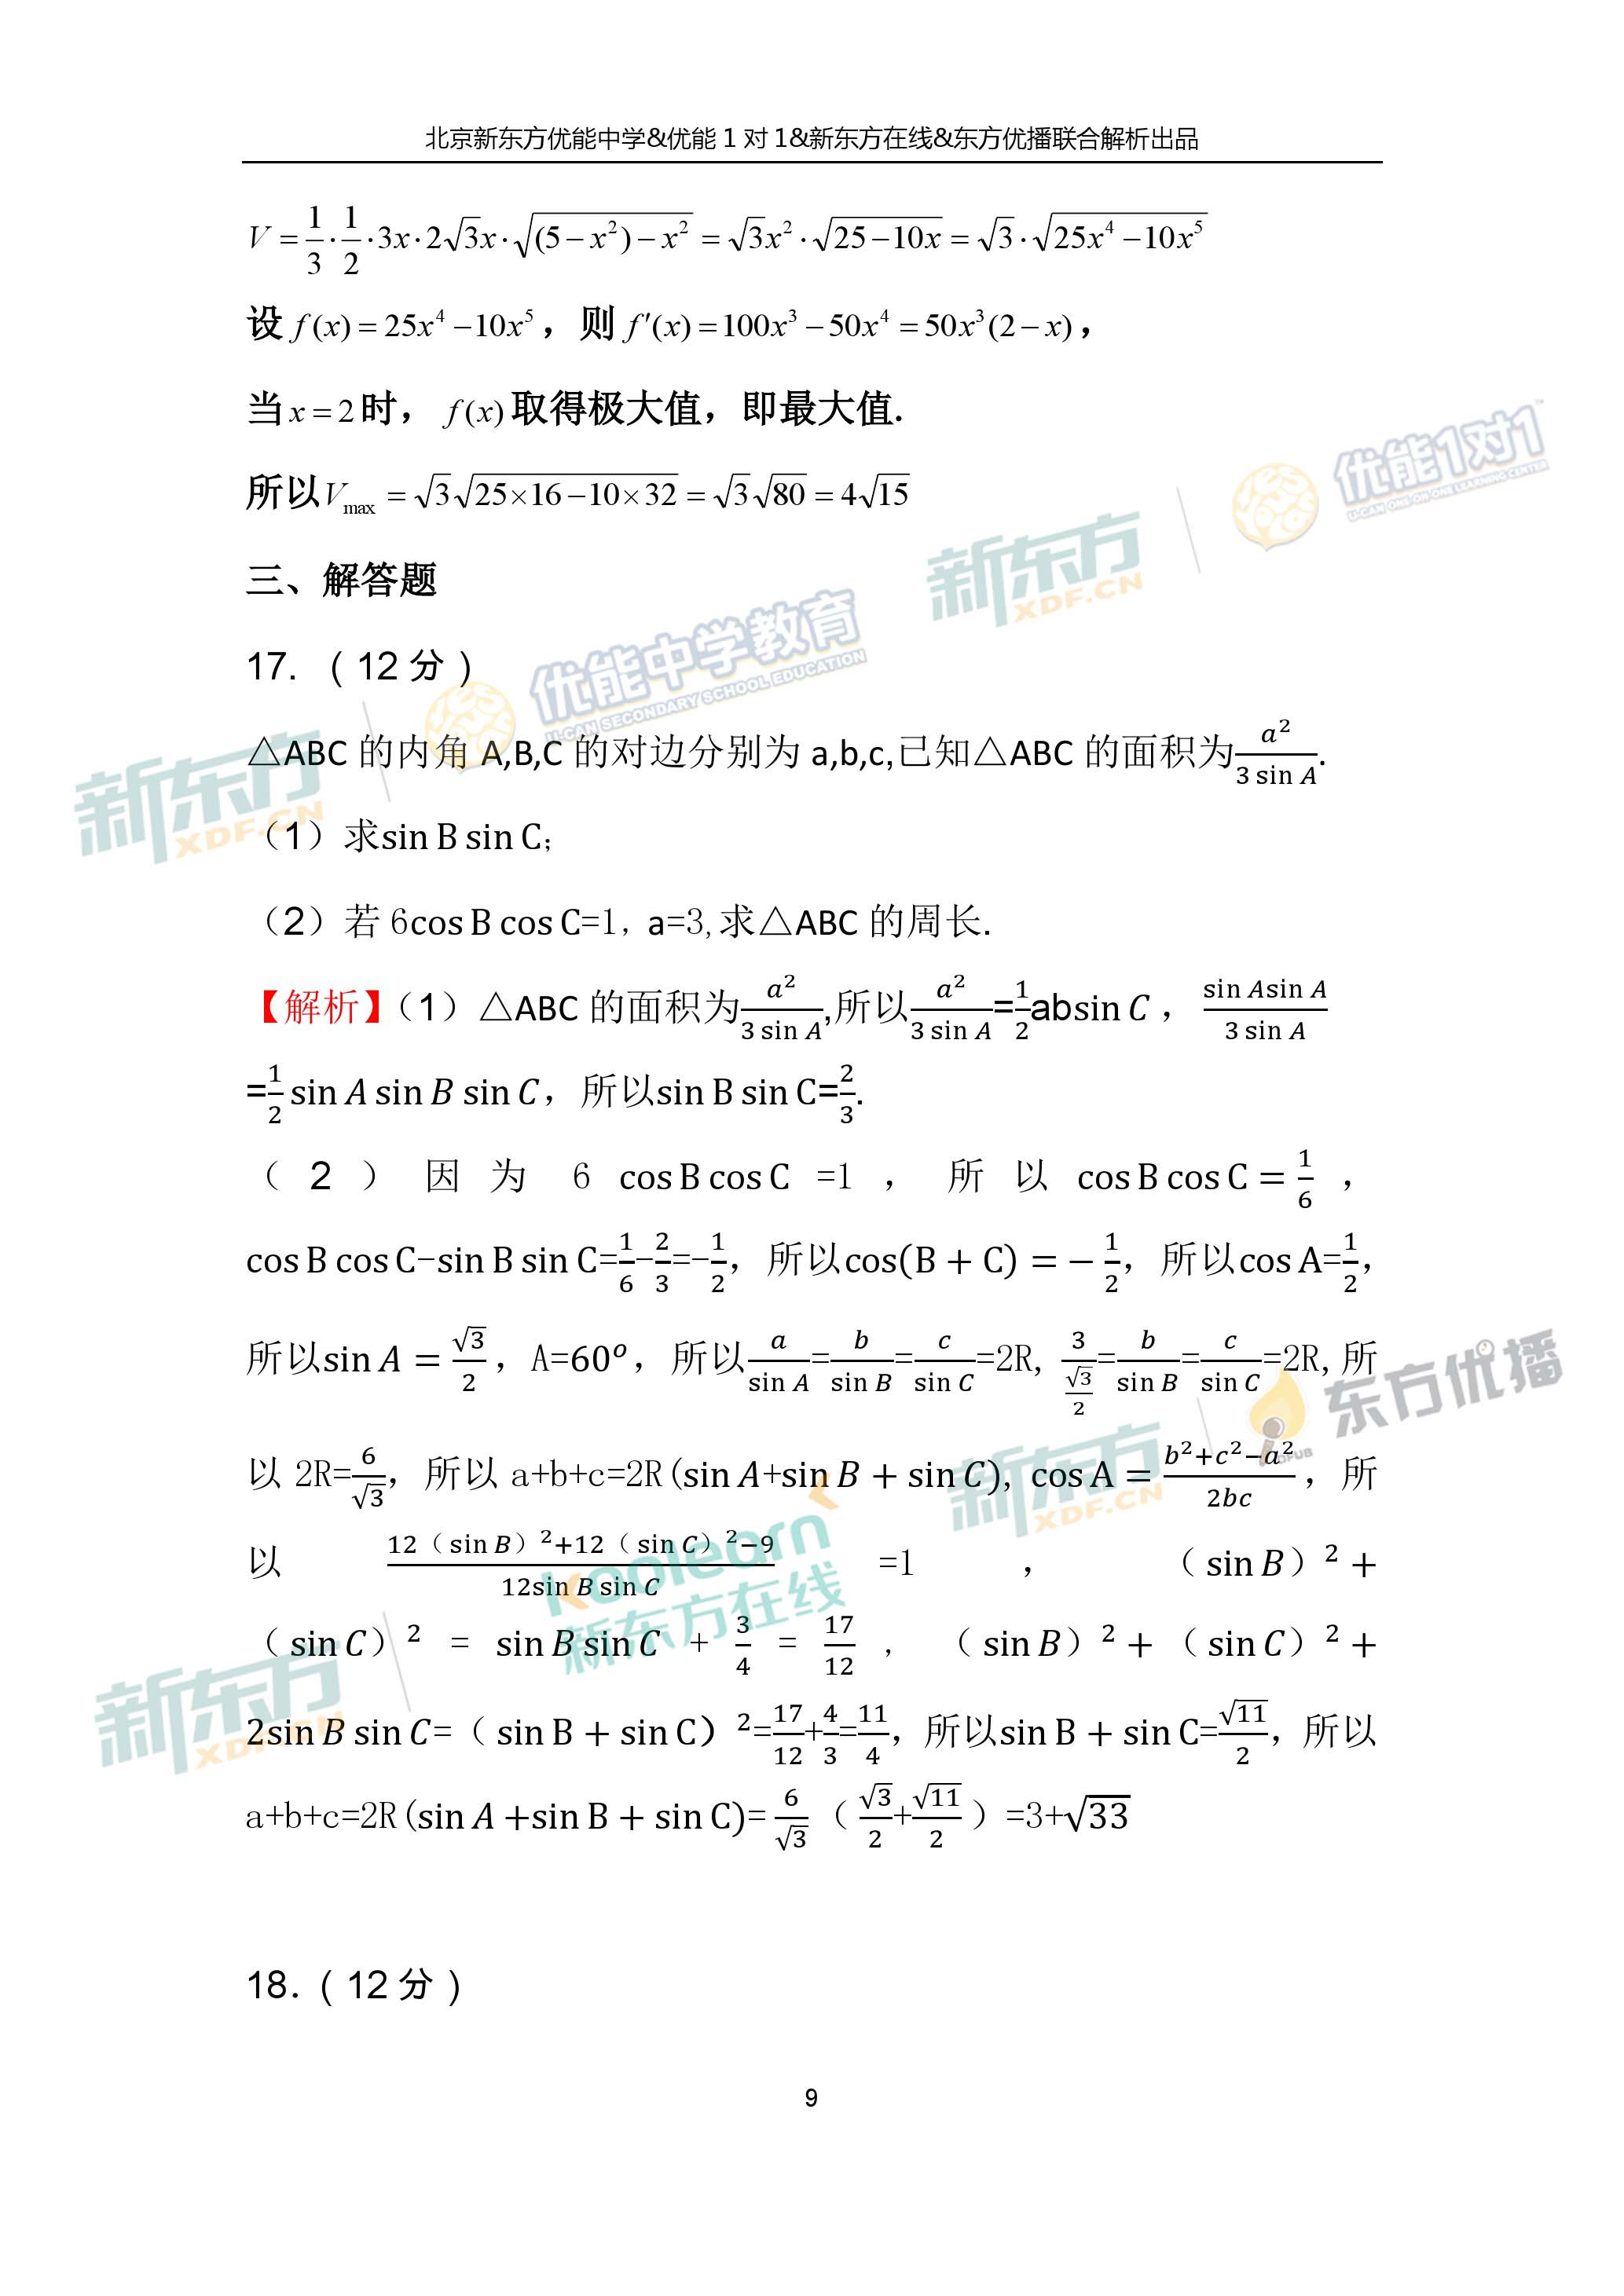 2017年高考全国卷1理科数学逐题解析（北京新东方优能）